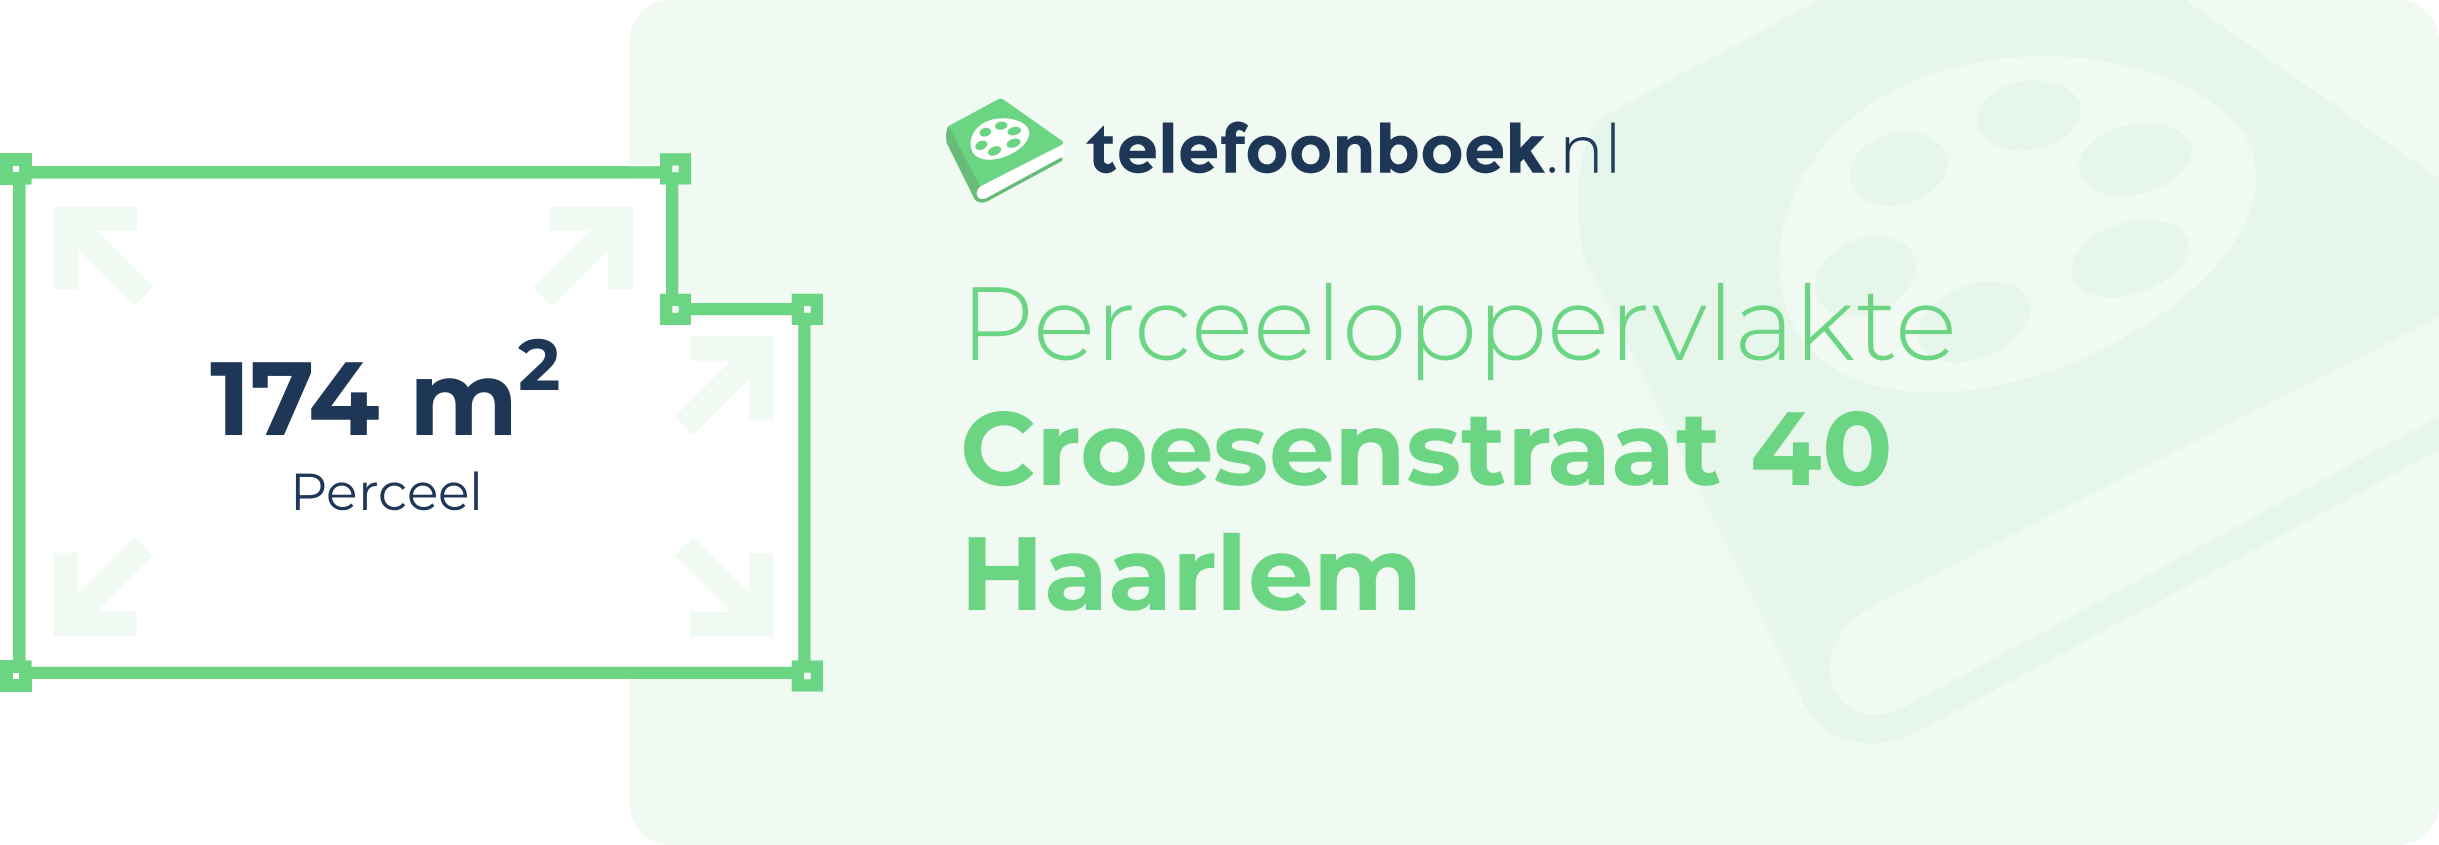 Perceeloppervlakte Croesenstraat 40 Haarlem